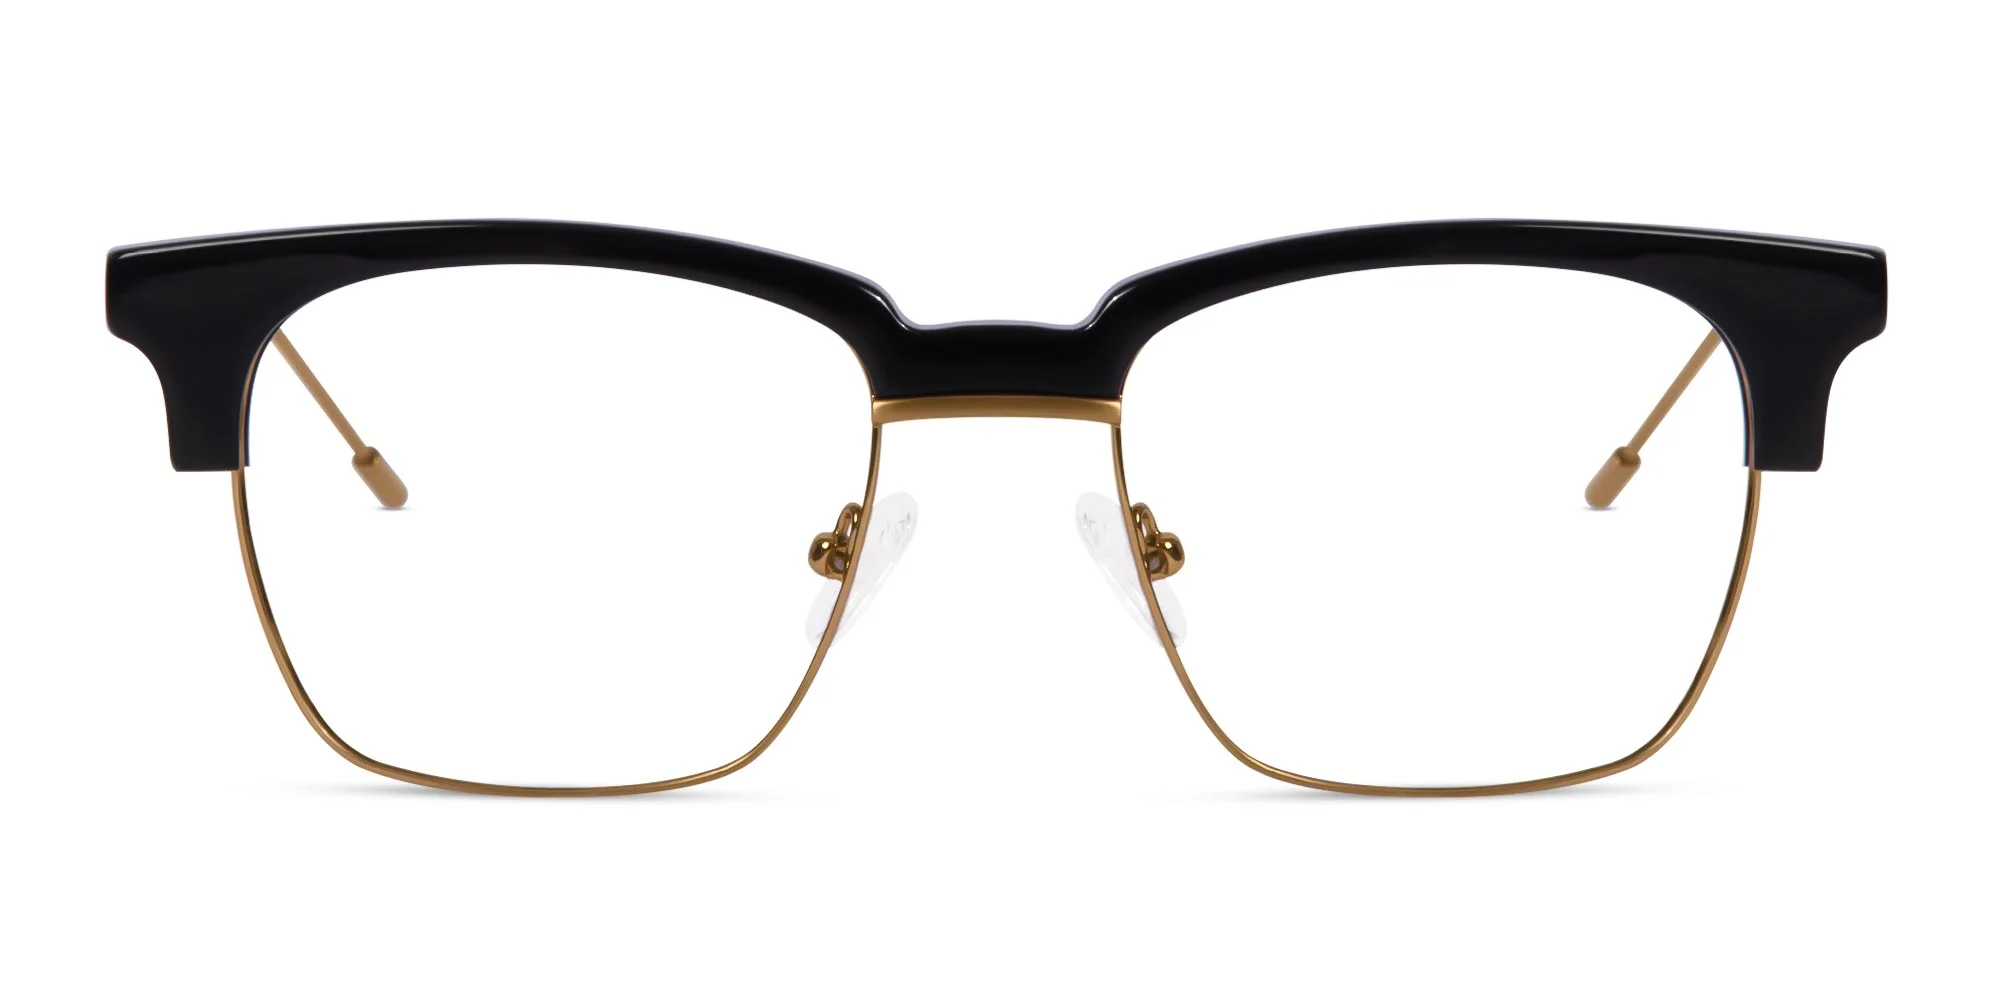 Polished Gold & Black Browline Glasses